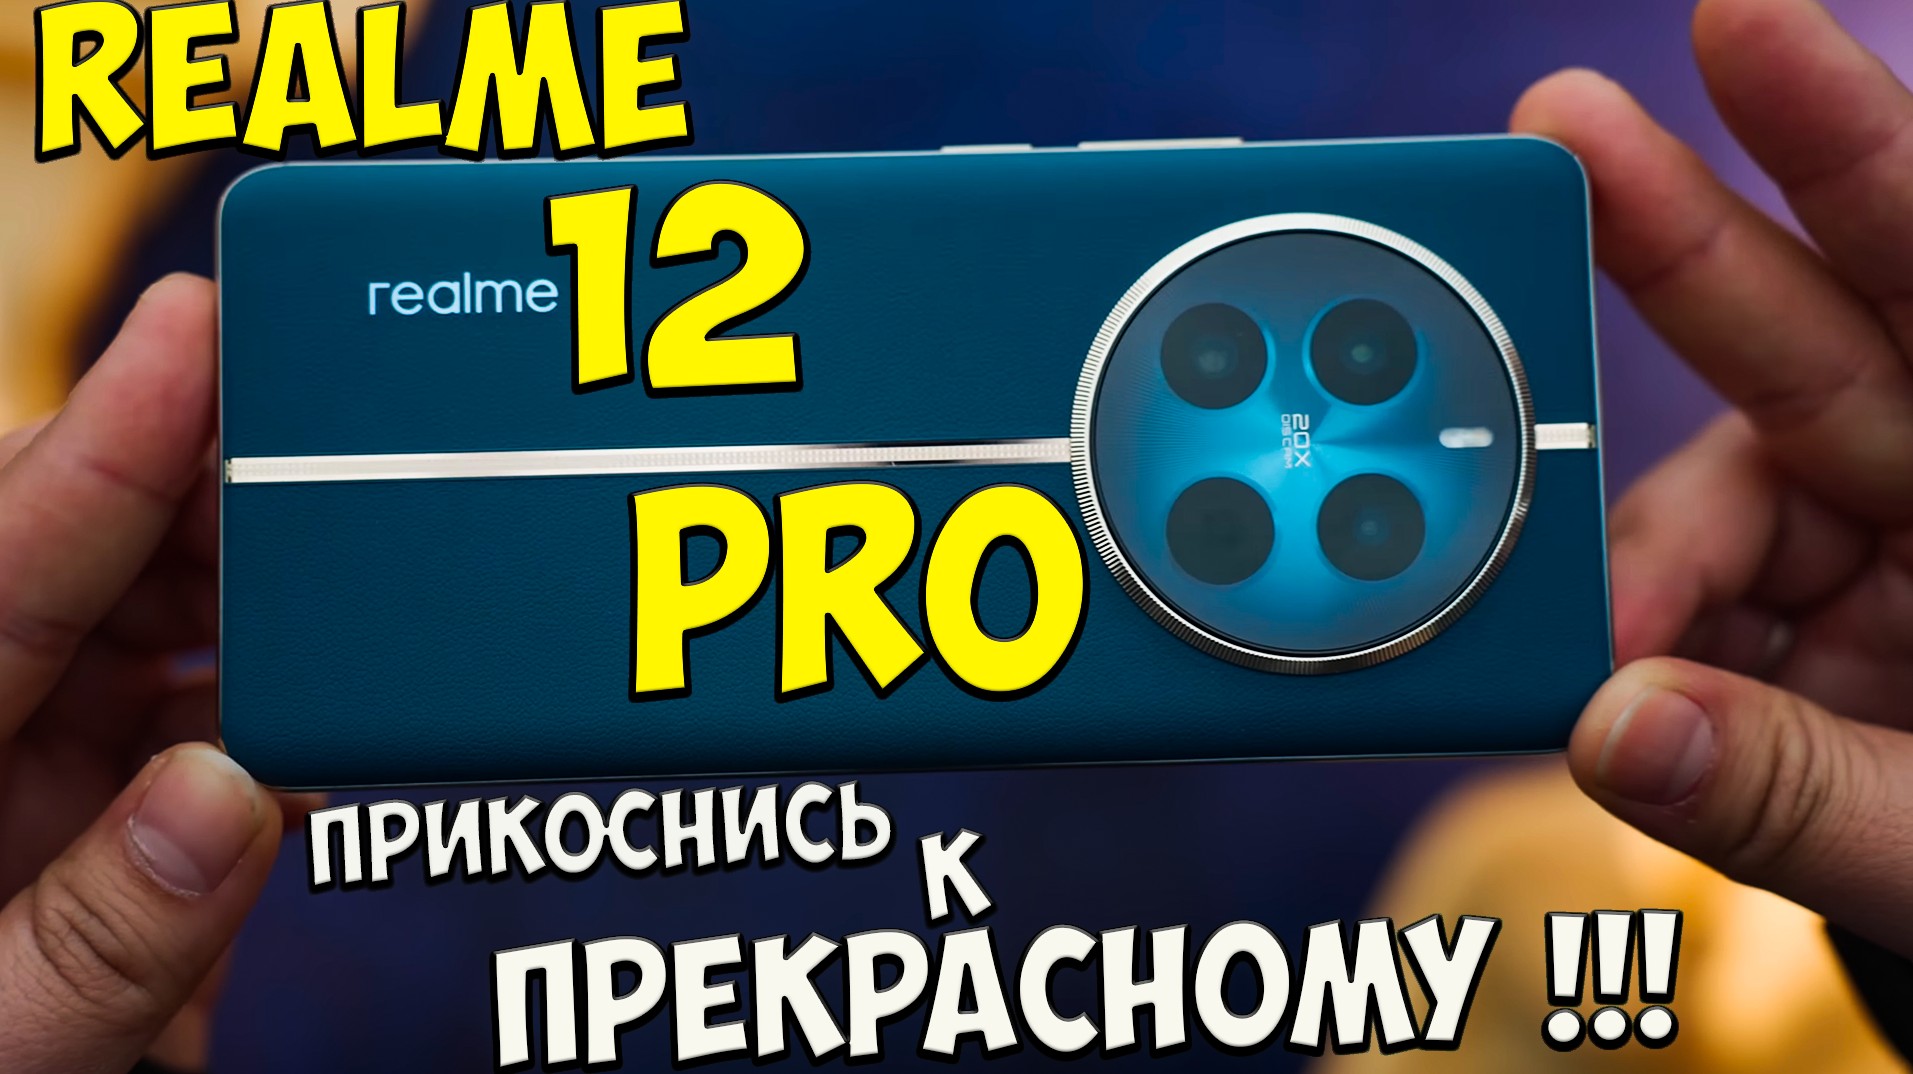 Realme 12 Pro - Сбалансированный народный ТОП в шикарном корпусе?? #Realme12pro #realme #реалми12п